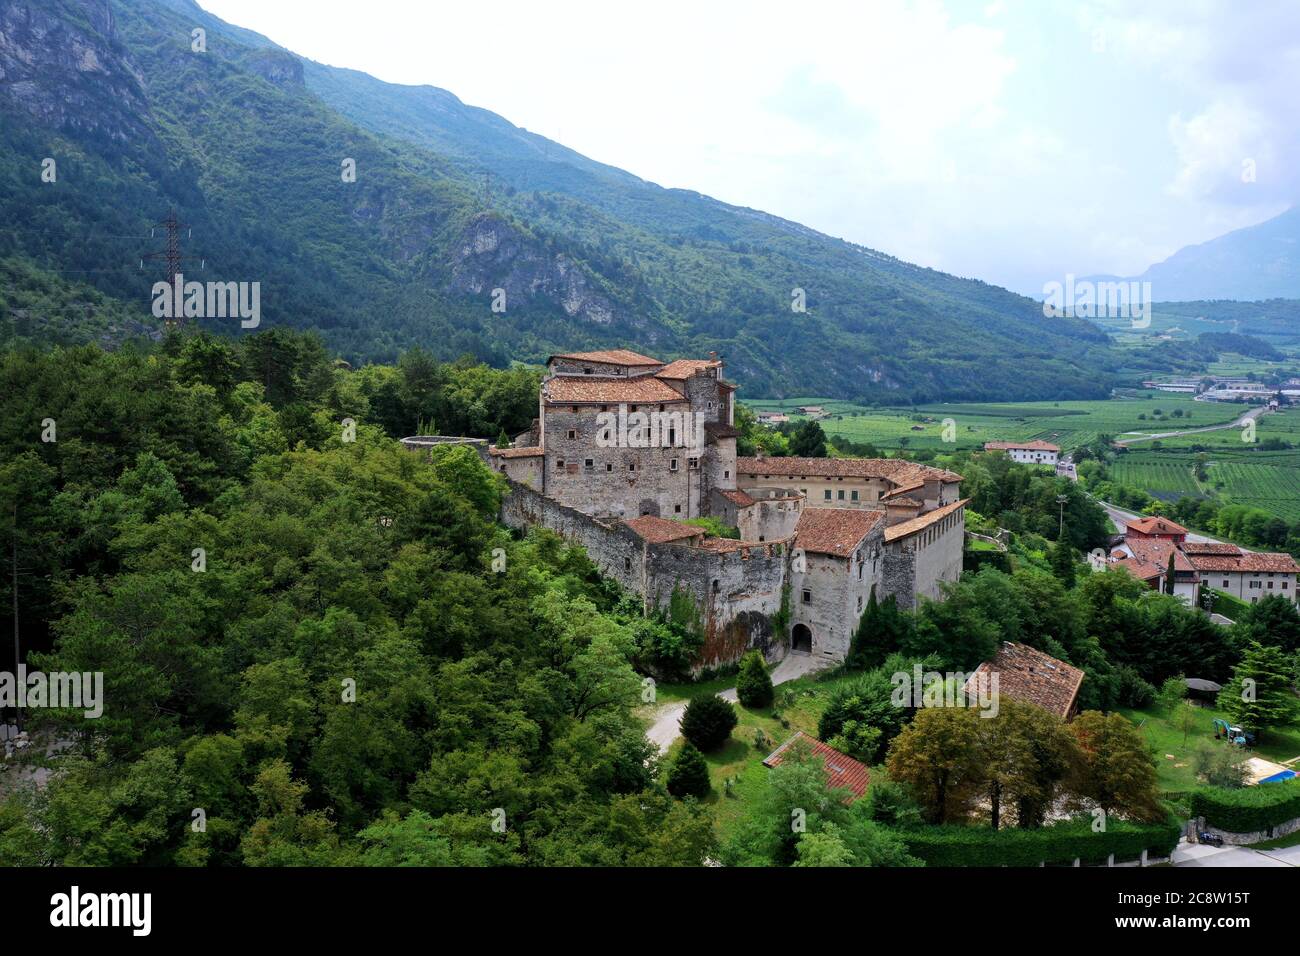 Vista aerea di Castel pietra, maniero situato sul pendio della collina di Castel Beseno, costruito su un enorme masso staccato dal Cengio Rosso Foto Stock